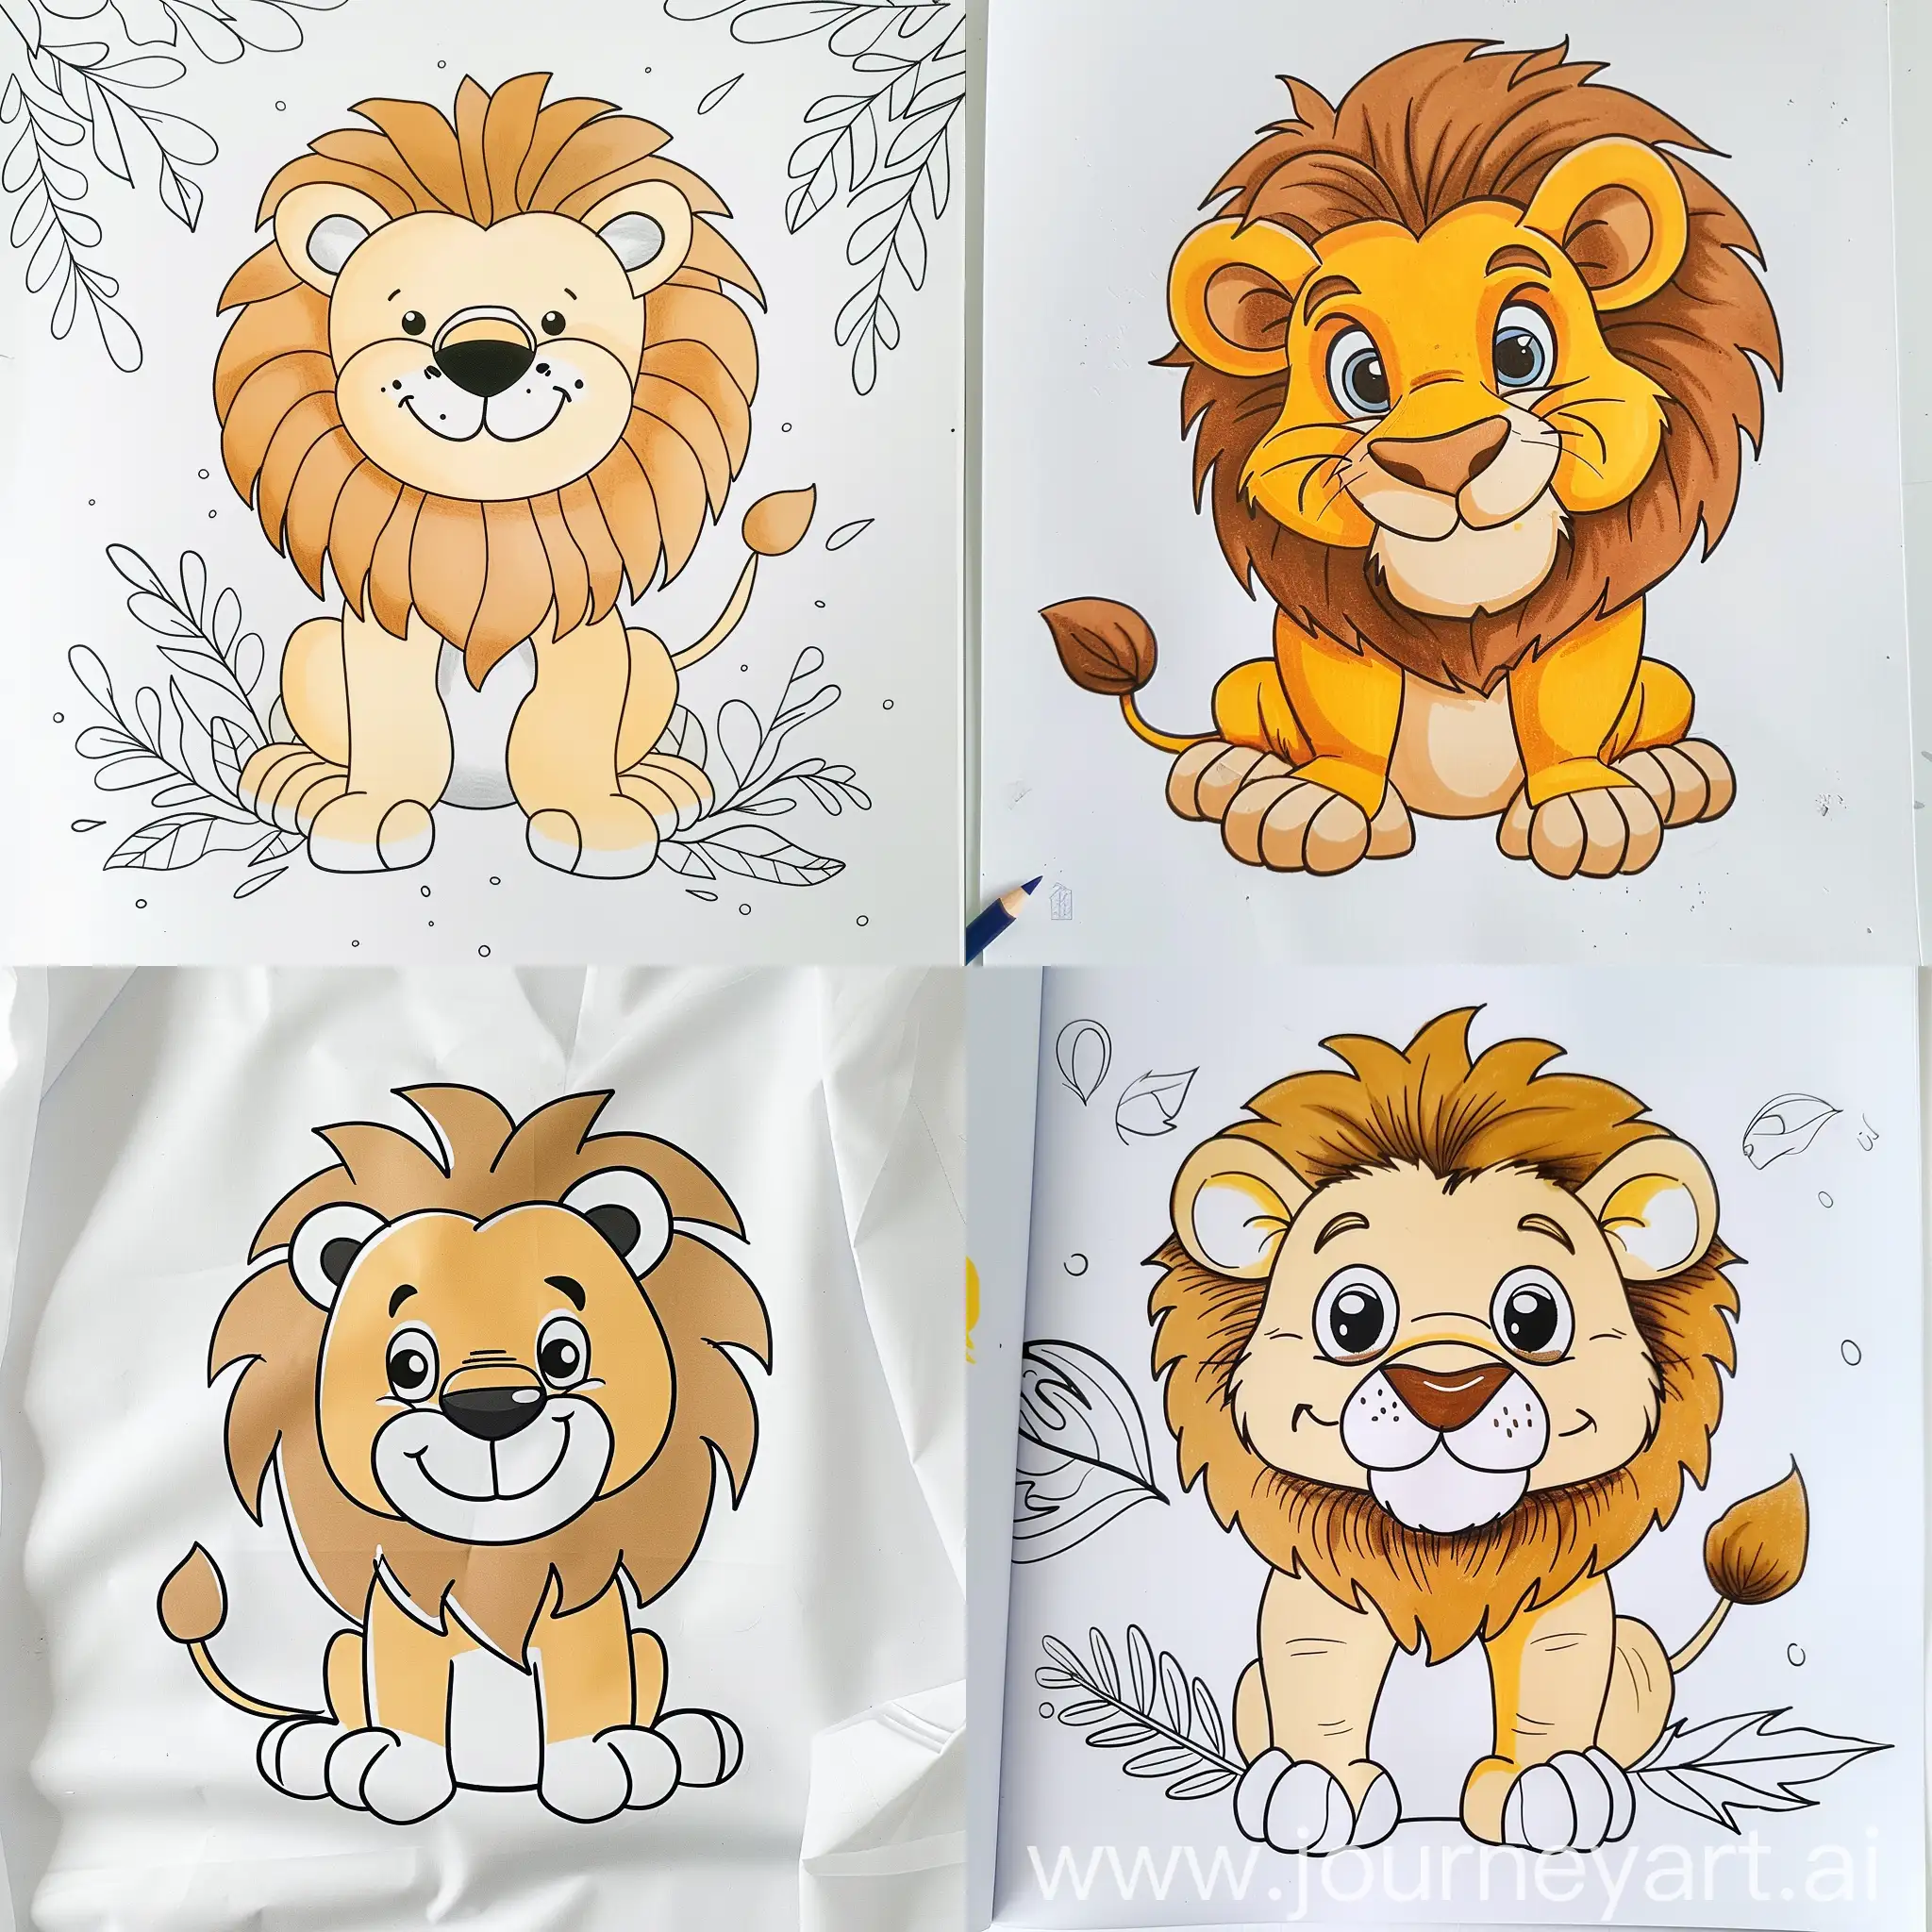 Dibujo un león lindo y sencillo para libro de colorear de niños pequeños, sin escalas de grises en una hoja blanca con fondo liso sin dibujos